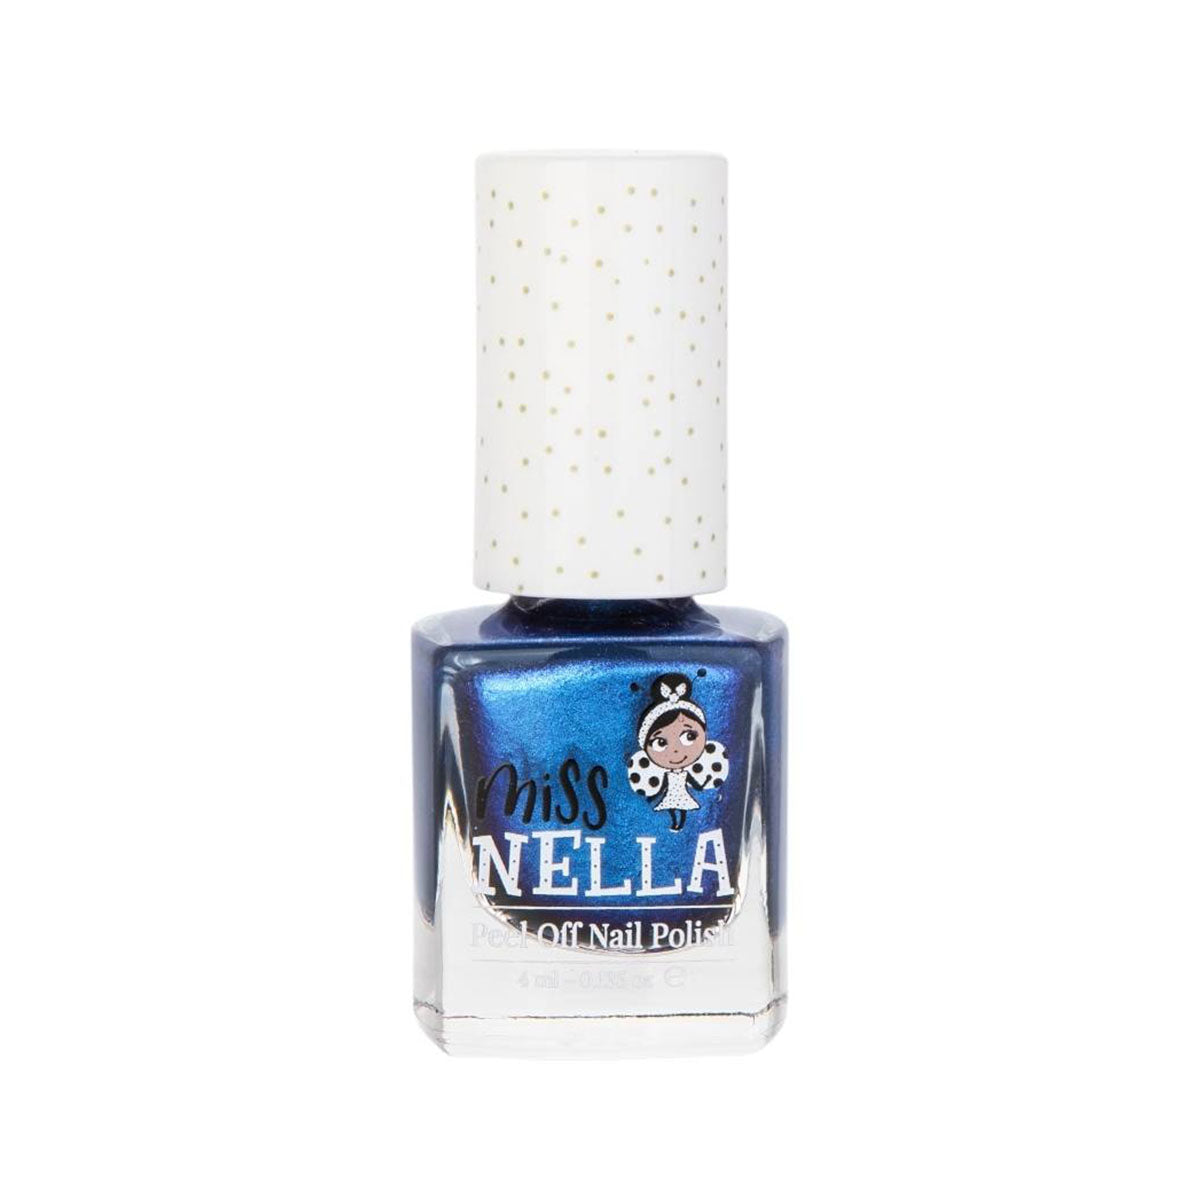 Laat de nageltjes van jouw kindje shinen met de nagellak you're so special van het merk Miss Nella. De peel off nagellak is speciaal ontworpen voor kinderen en is vrij van chemicaliën. In verschillende kleuren. VanZus